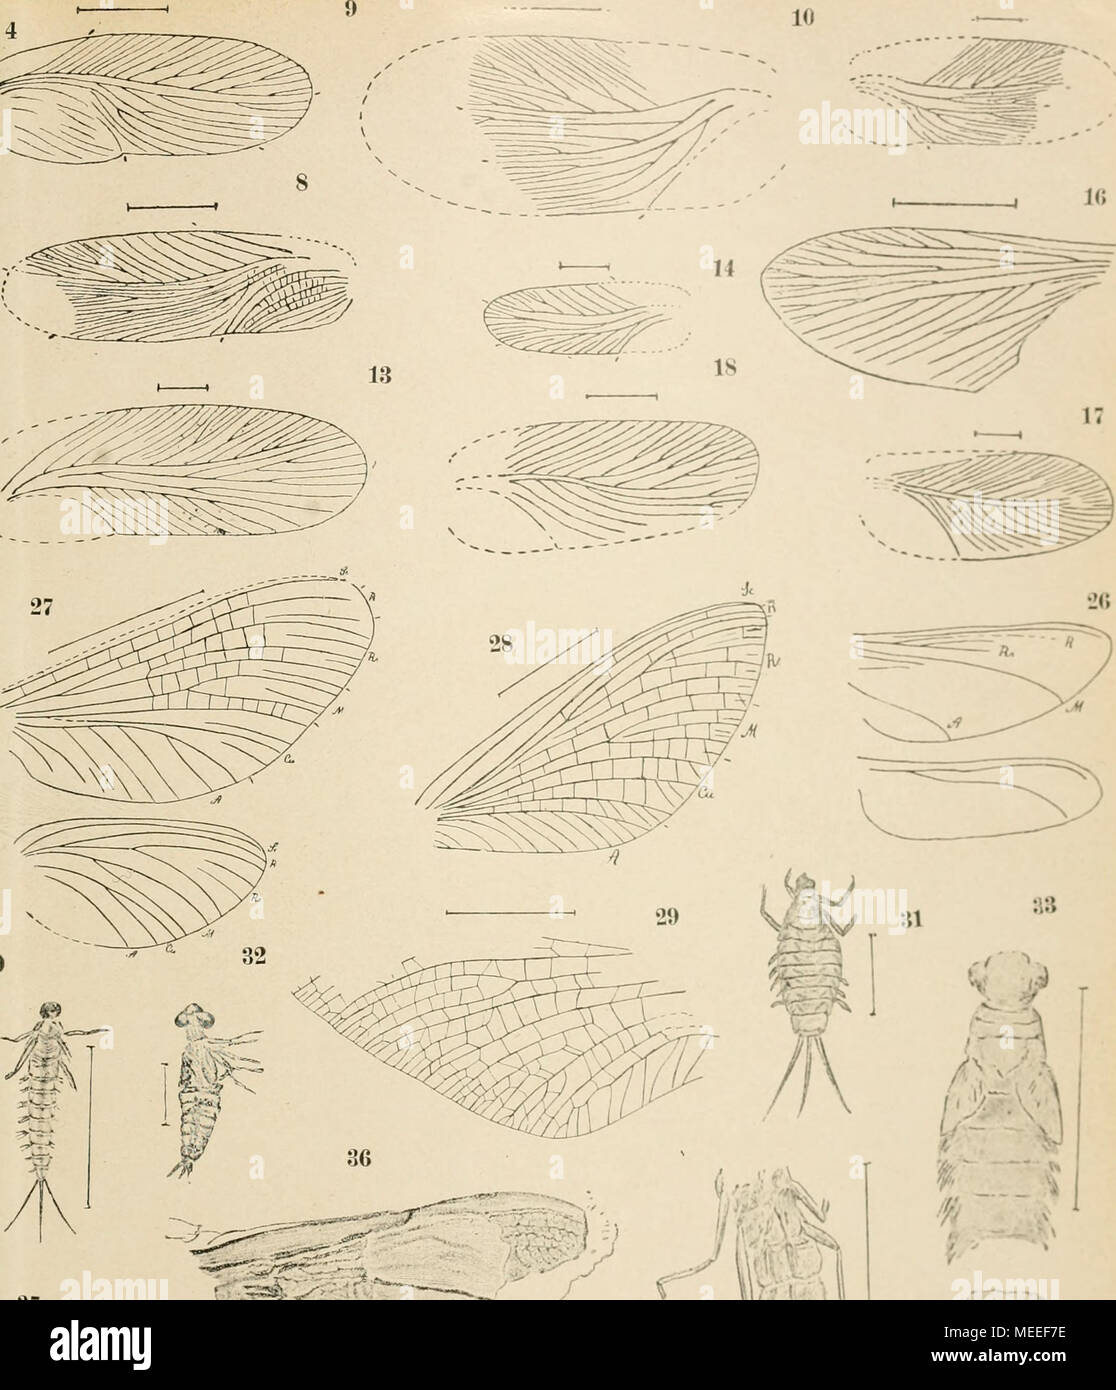 . Die fossilen insekten und die phylogenie der rezenten formen; ein handbuch für paläontologen und zoologen . 37 ^' :?5 .""" Foto Stock